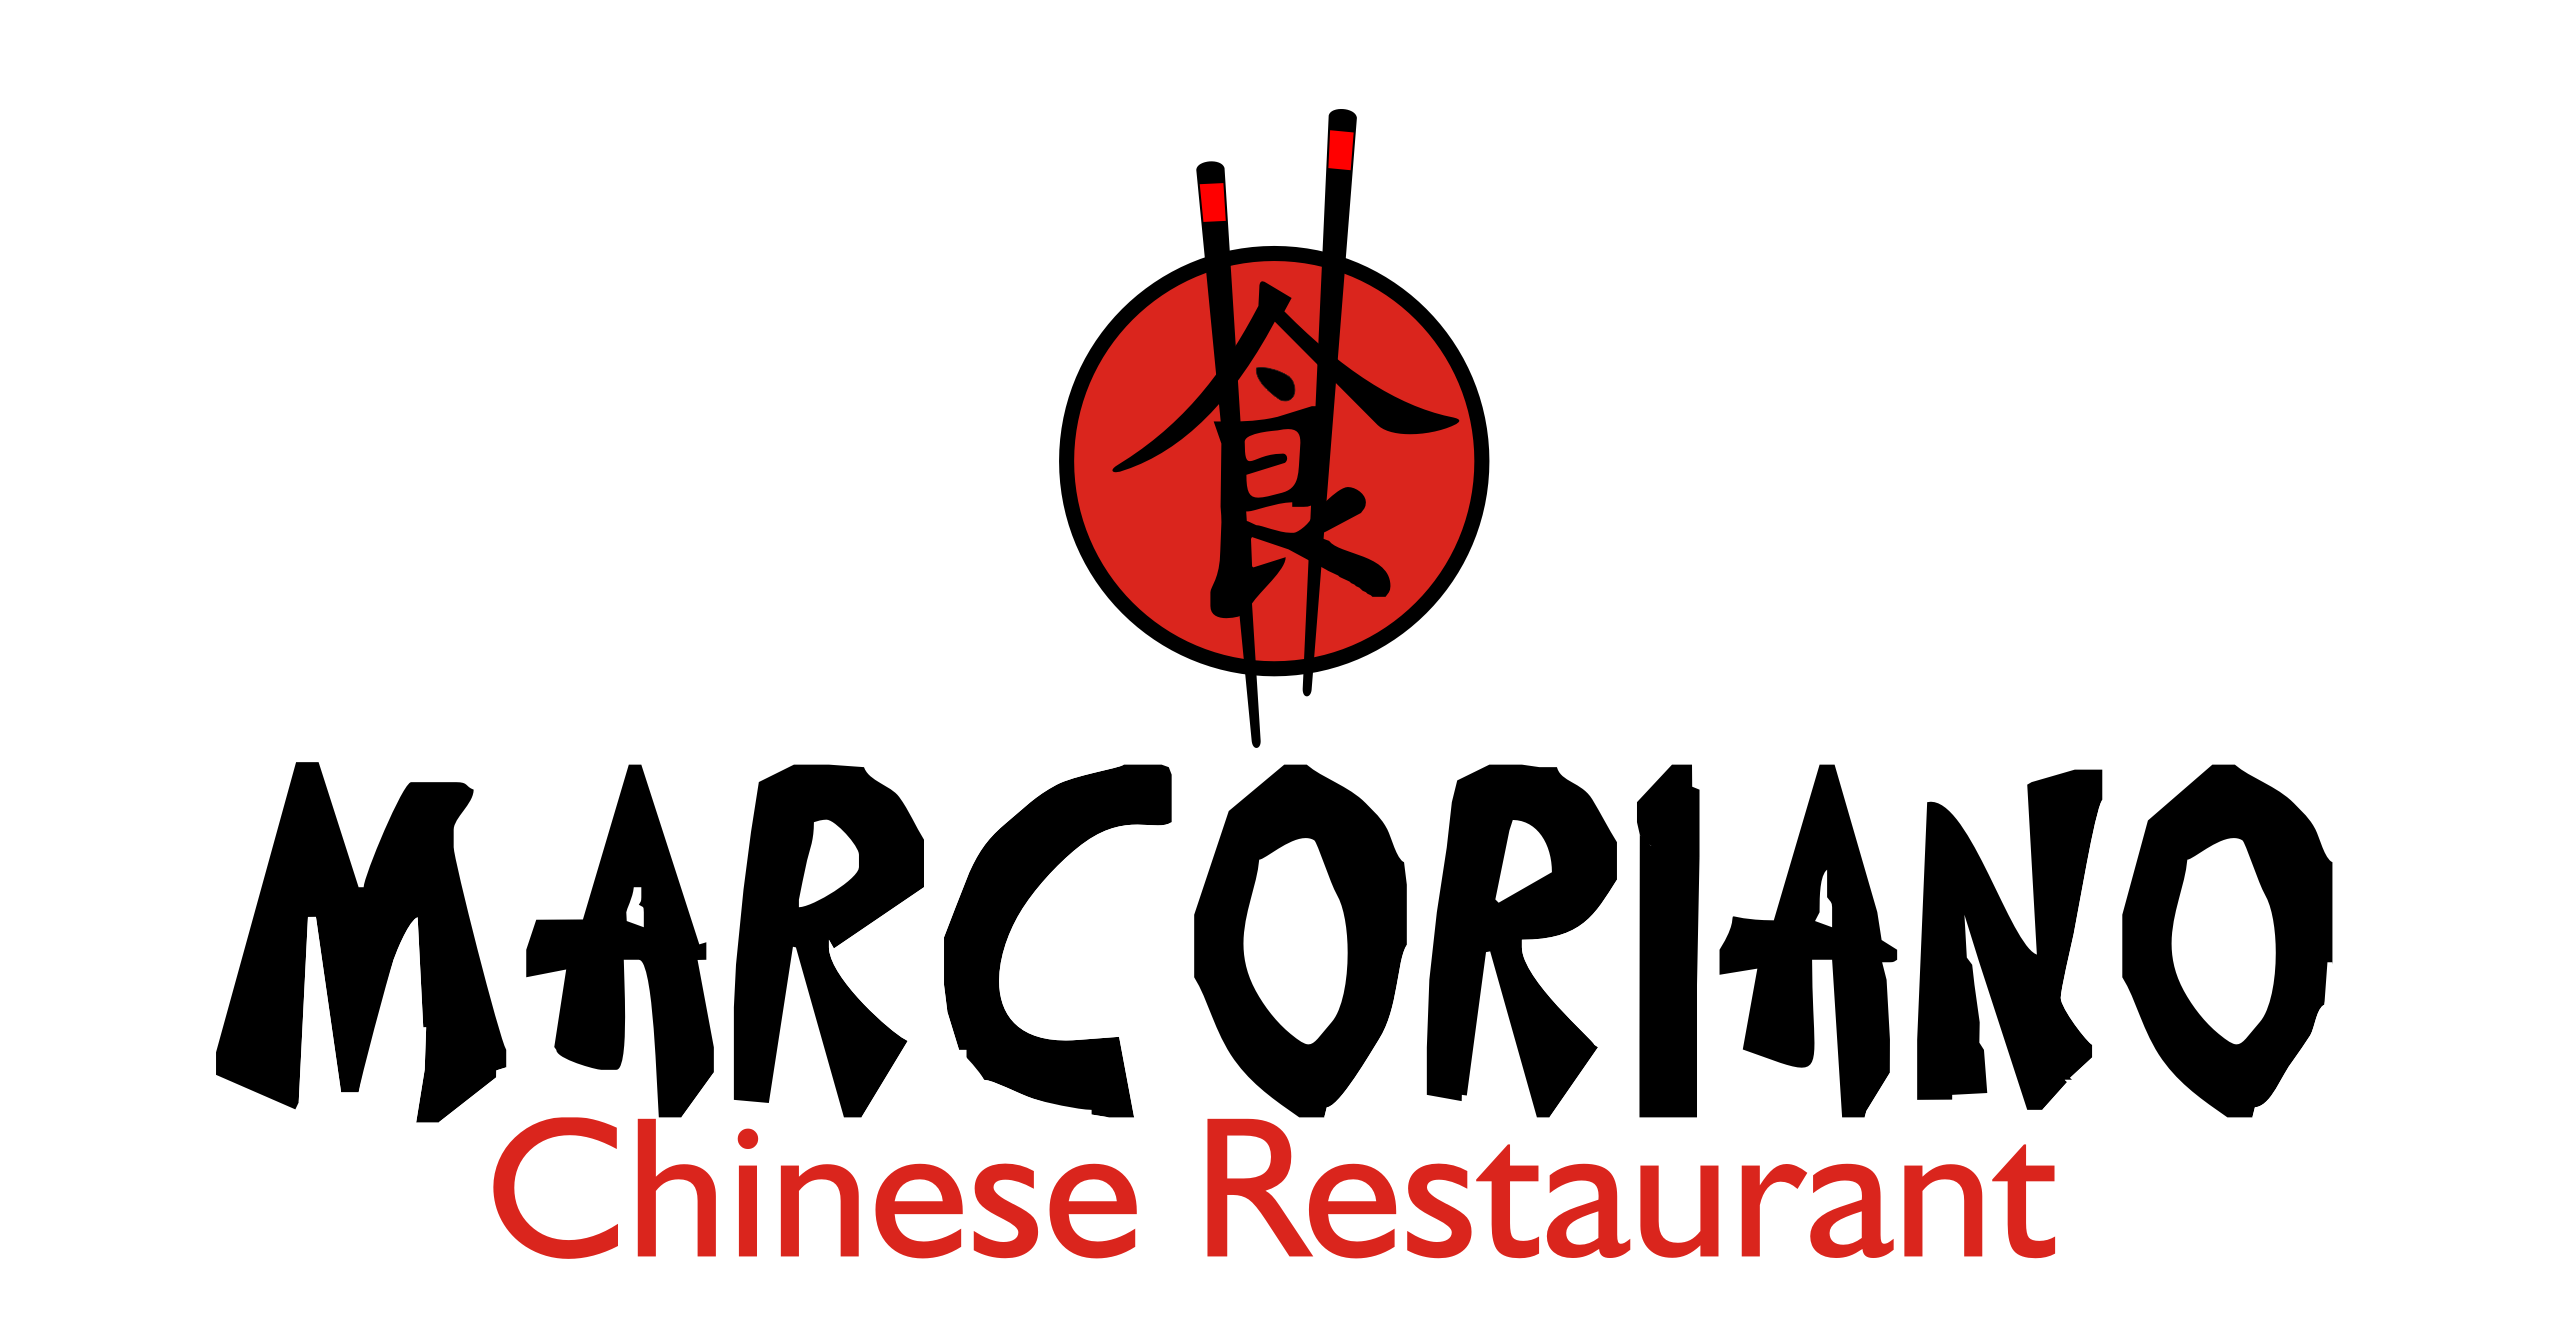 MarcorianoChineseRestaurant